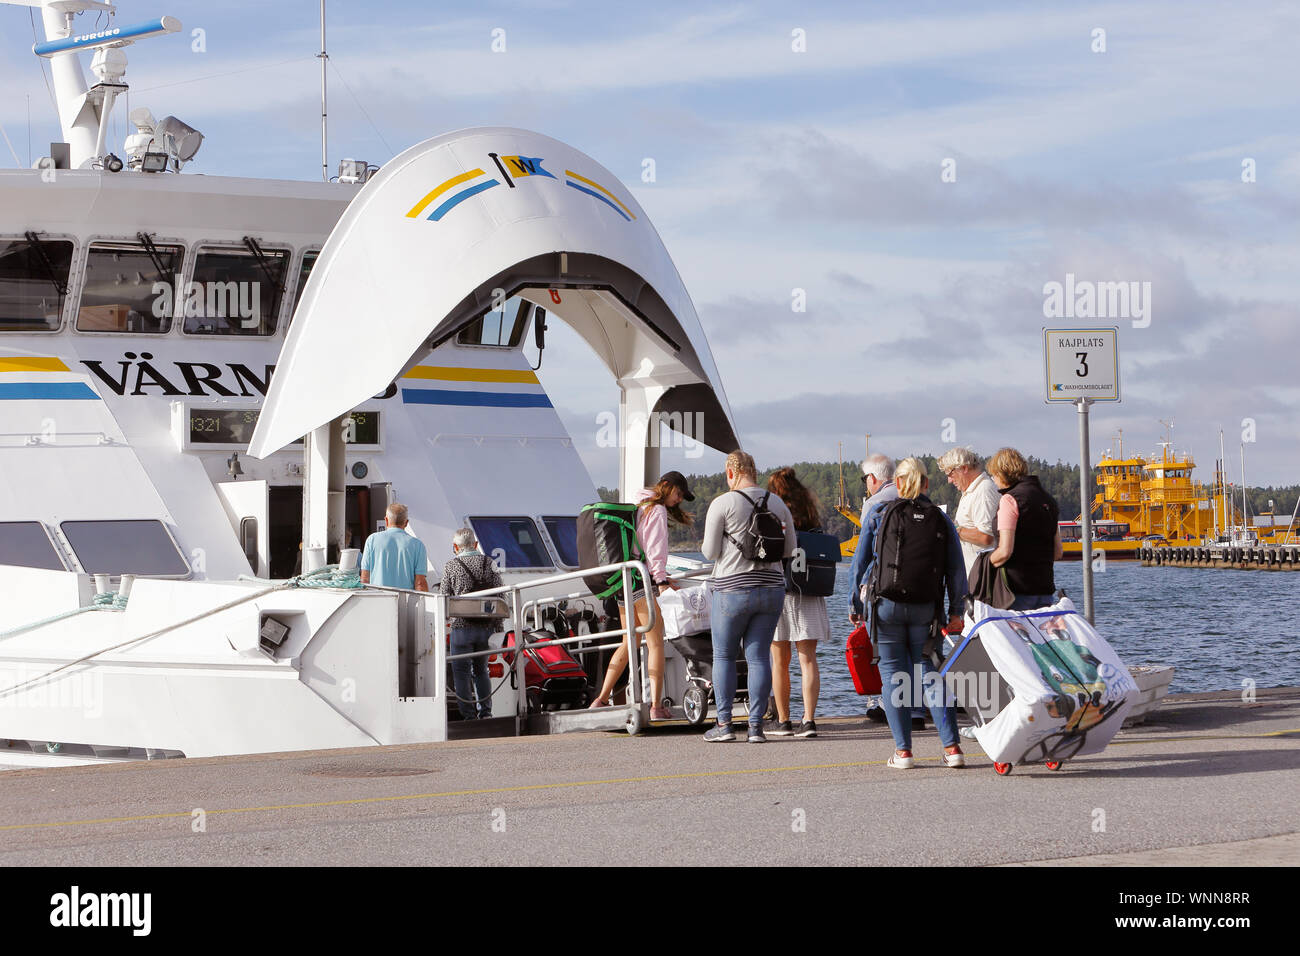 Vaxholm, Schweden - 30. August 2019: die Passagiere an Bord des Schiffes Waxholmsbolaget öffentliche Verkehrsmittel Archipel Varmdo am Vaxholm zu stoppen. Stockfoto